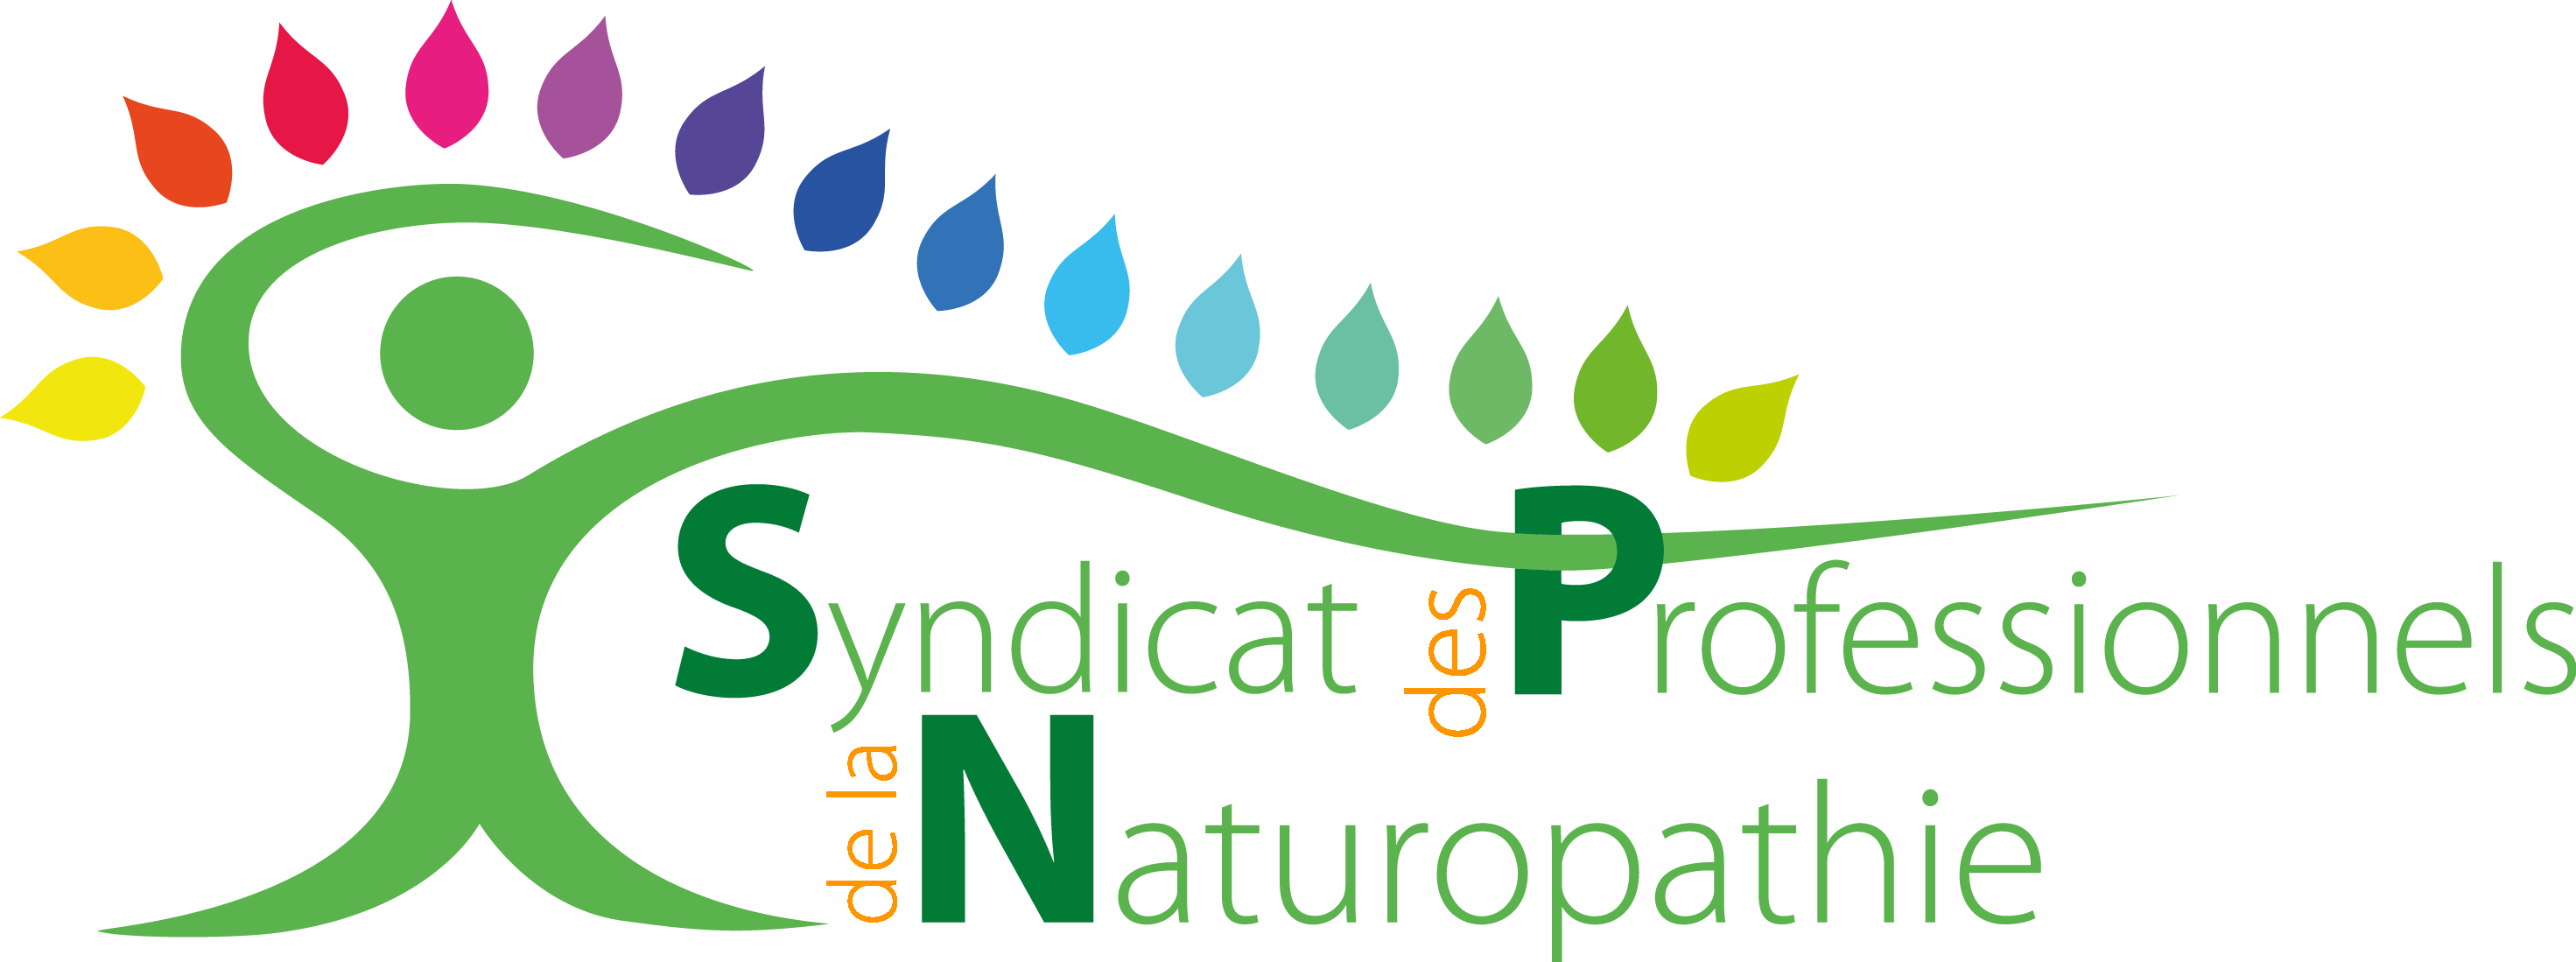 logo du syndicat des professionnels de naturopathie représentant un bonhomme vert